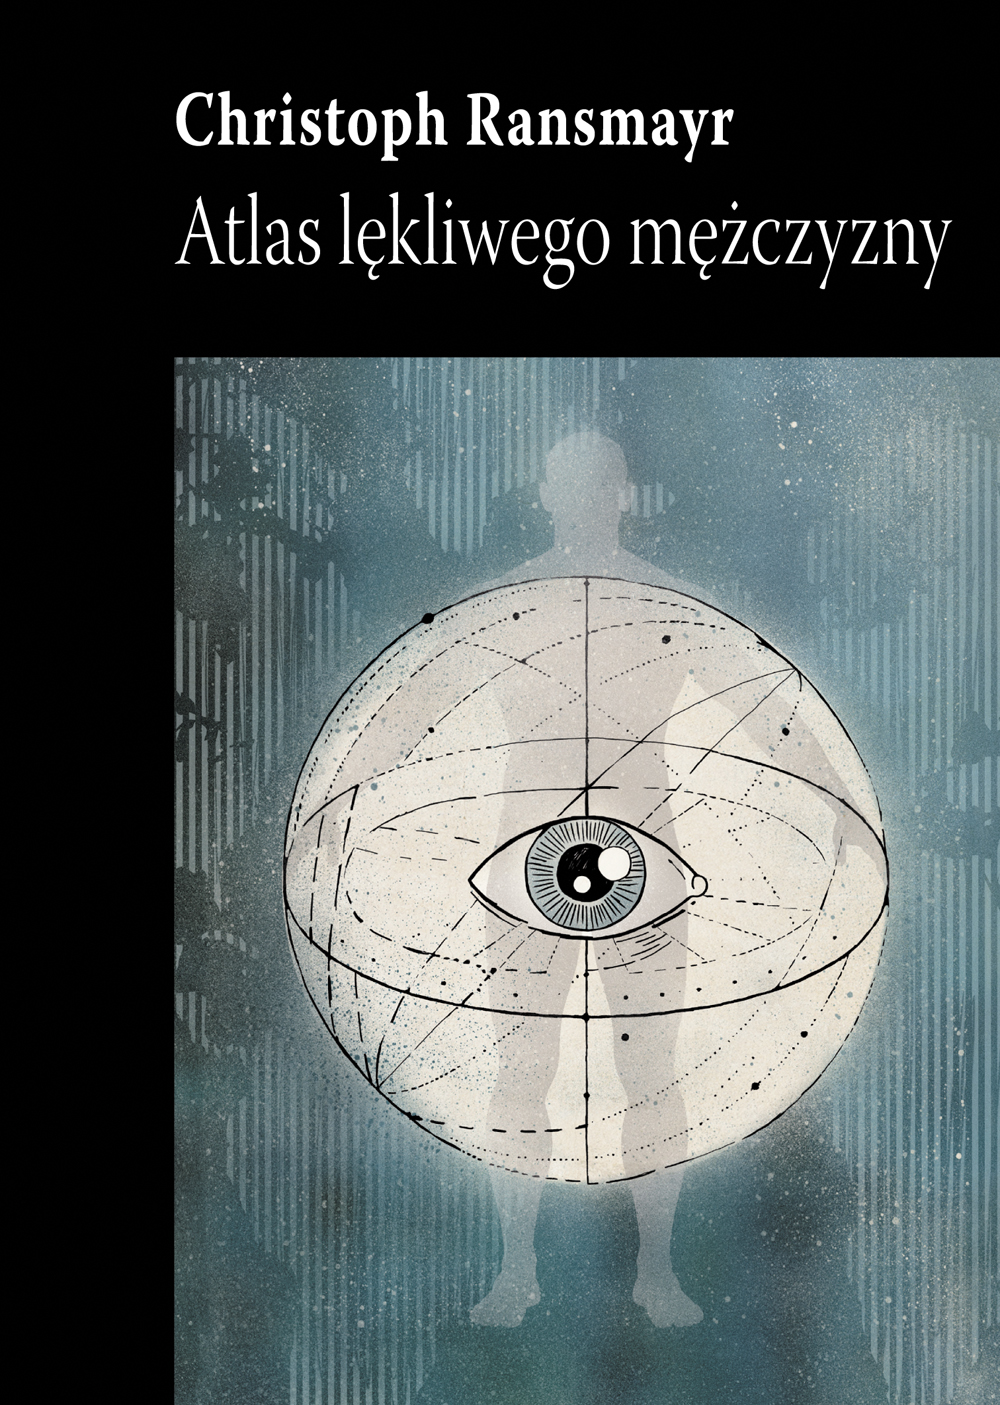 Christoph Ransmayr, „Atlas lękliwego mężczyzny” – okładka książki (źródło: materiały prasowe wydawcy)